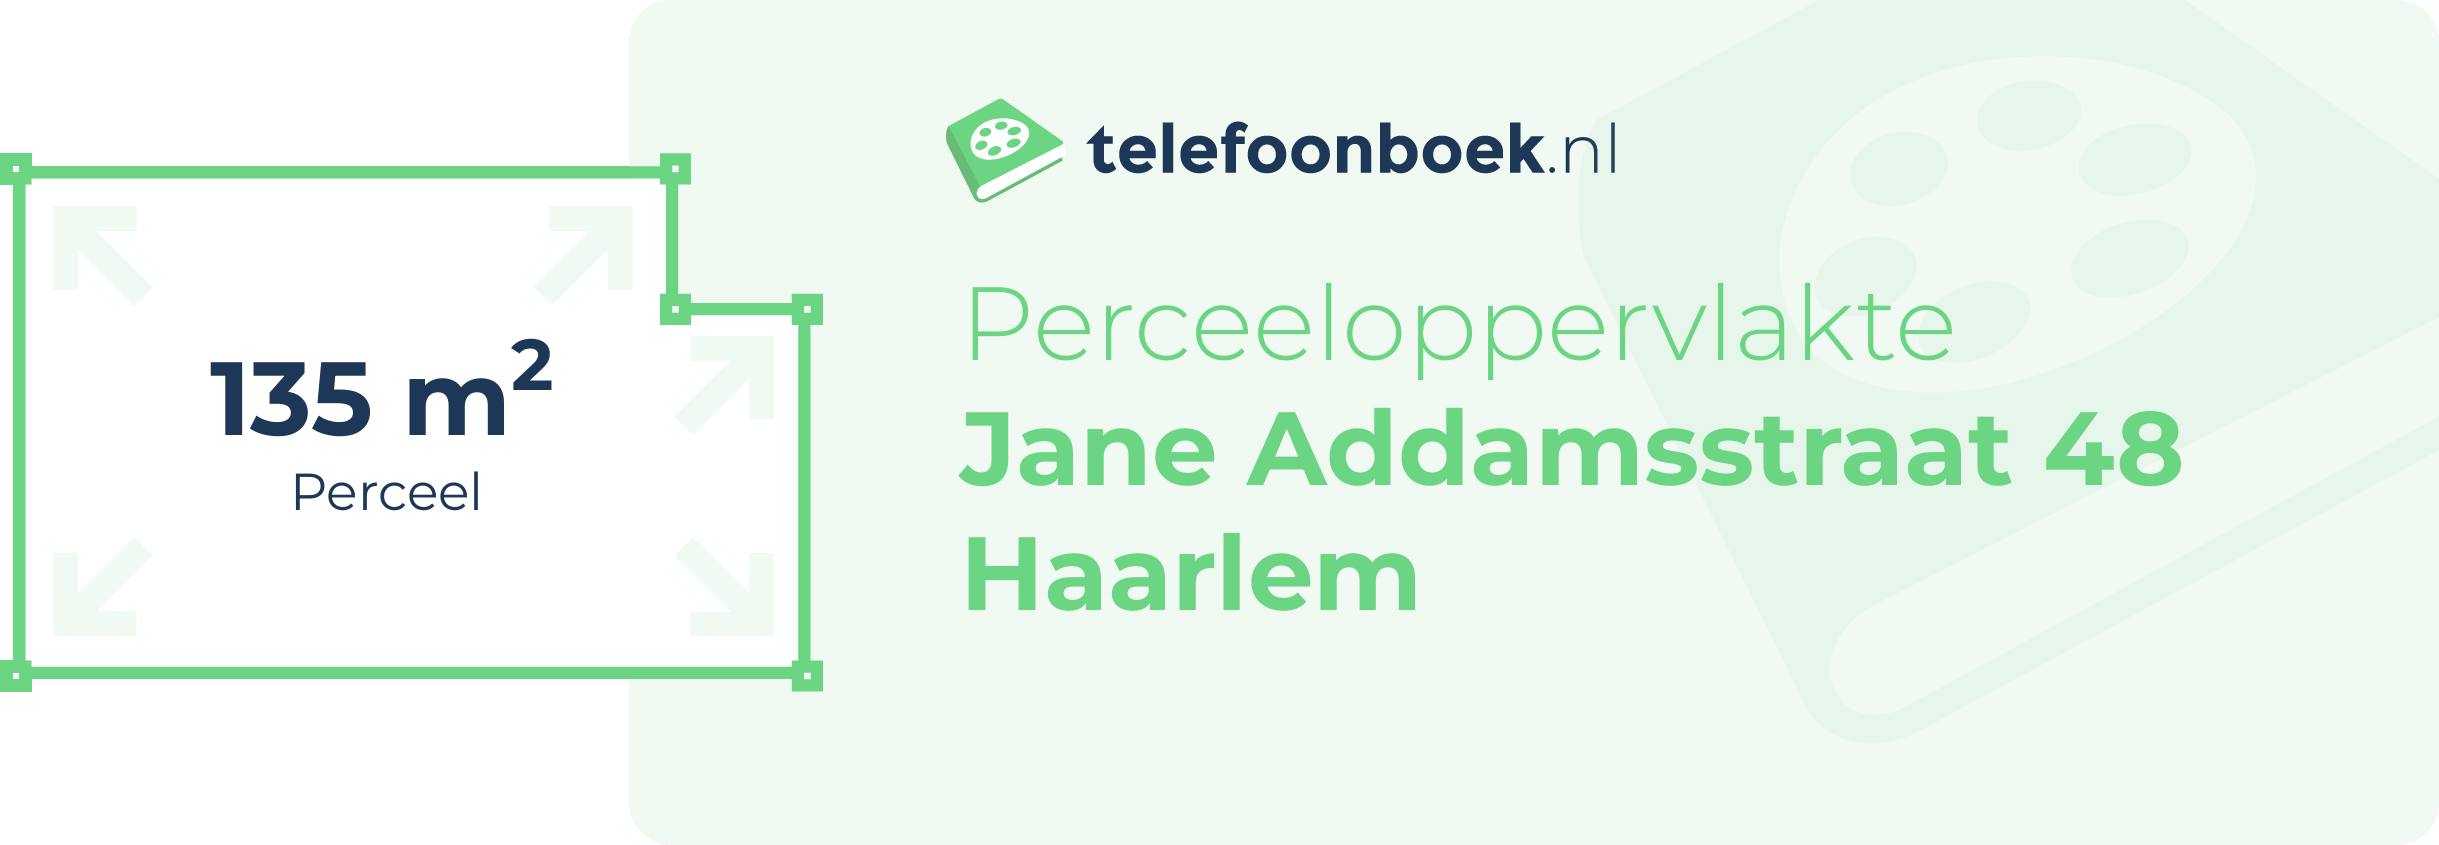 Perceeloppervlakte Jane Addamsstraat 48 Haarlem